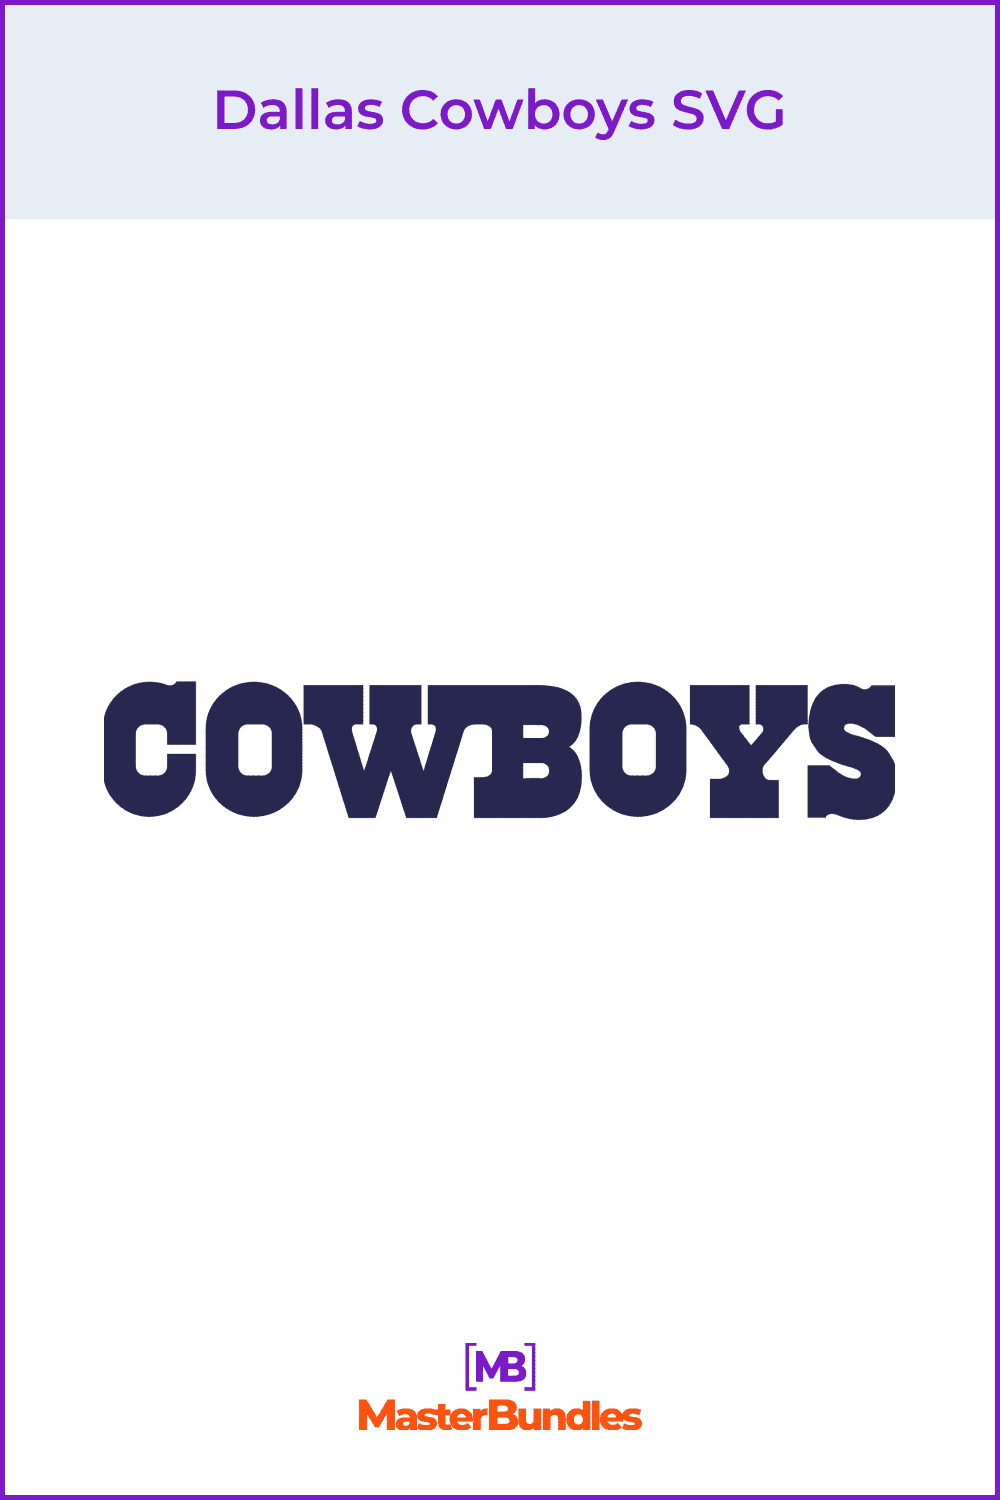 Dallas Cowboys SVG.